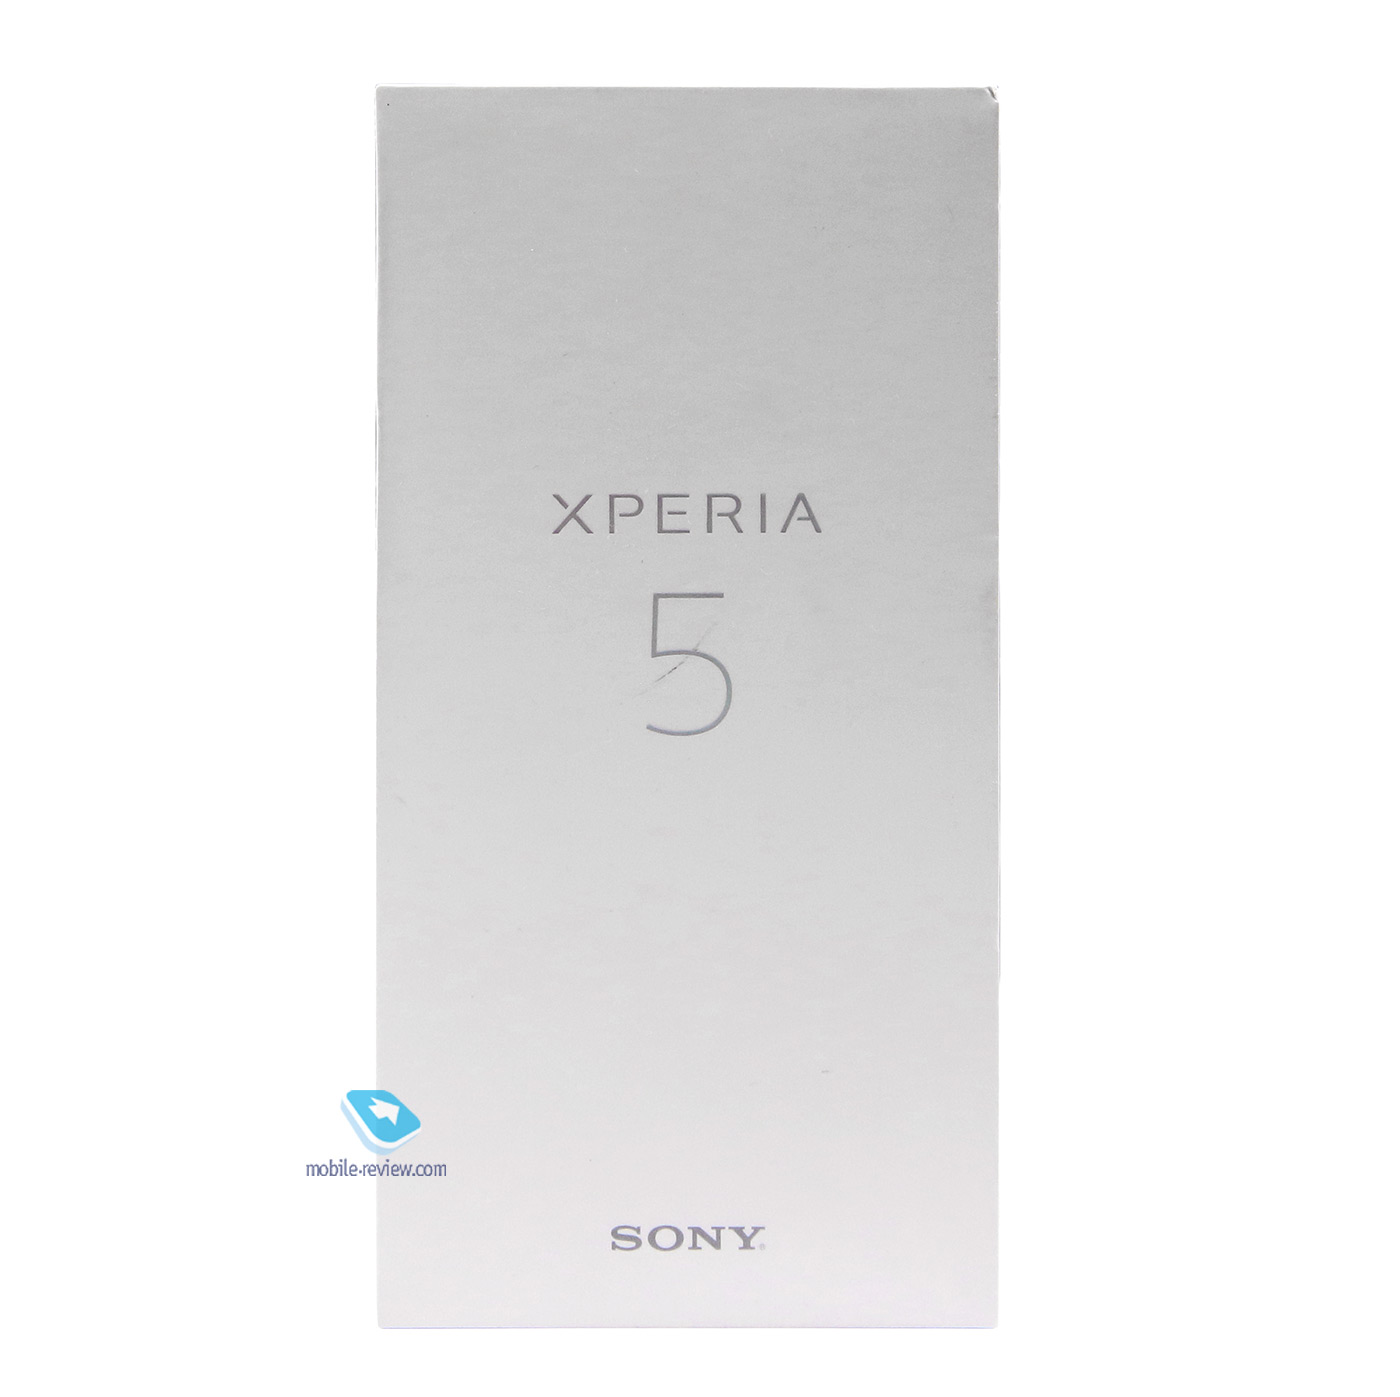   Sony Xperia 5 (J9210)